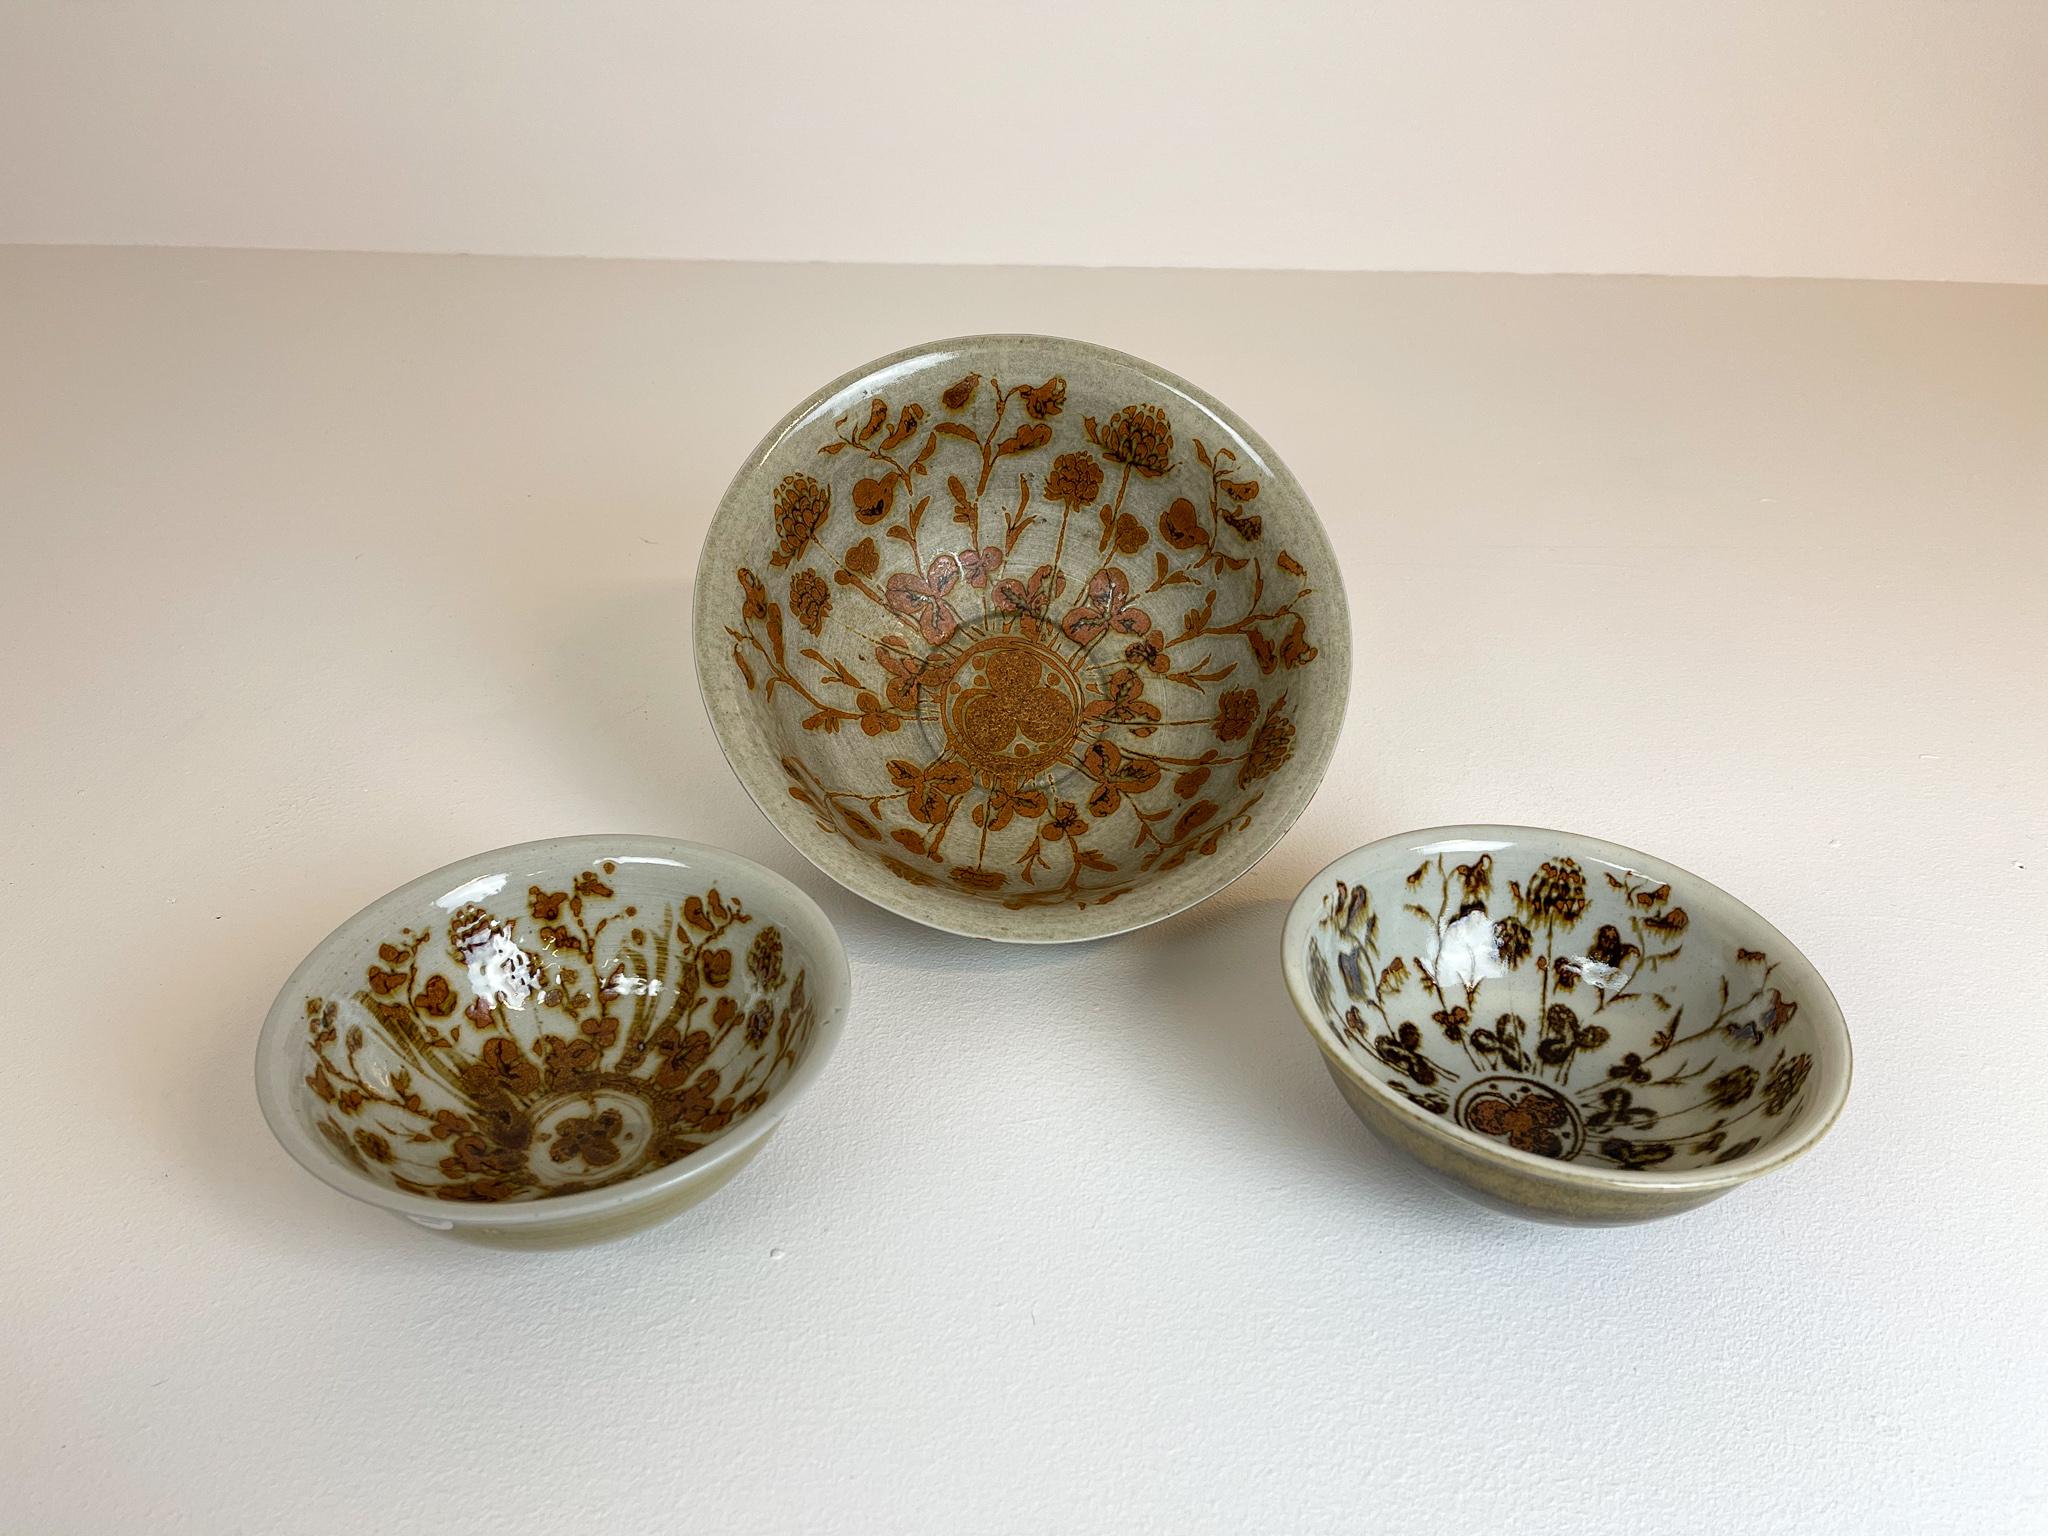 Swedish Scandinavian Modern Ceramic Bowls by Carl-Harry Stålhane Design Huset, Sweden For Sale